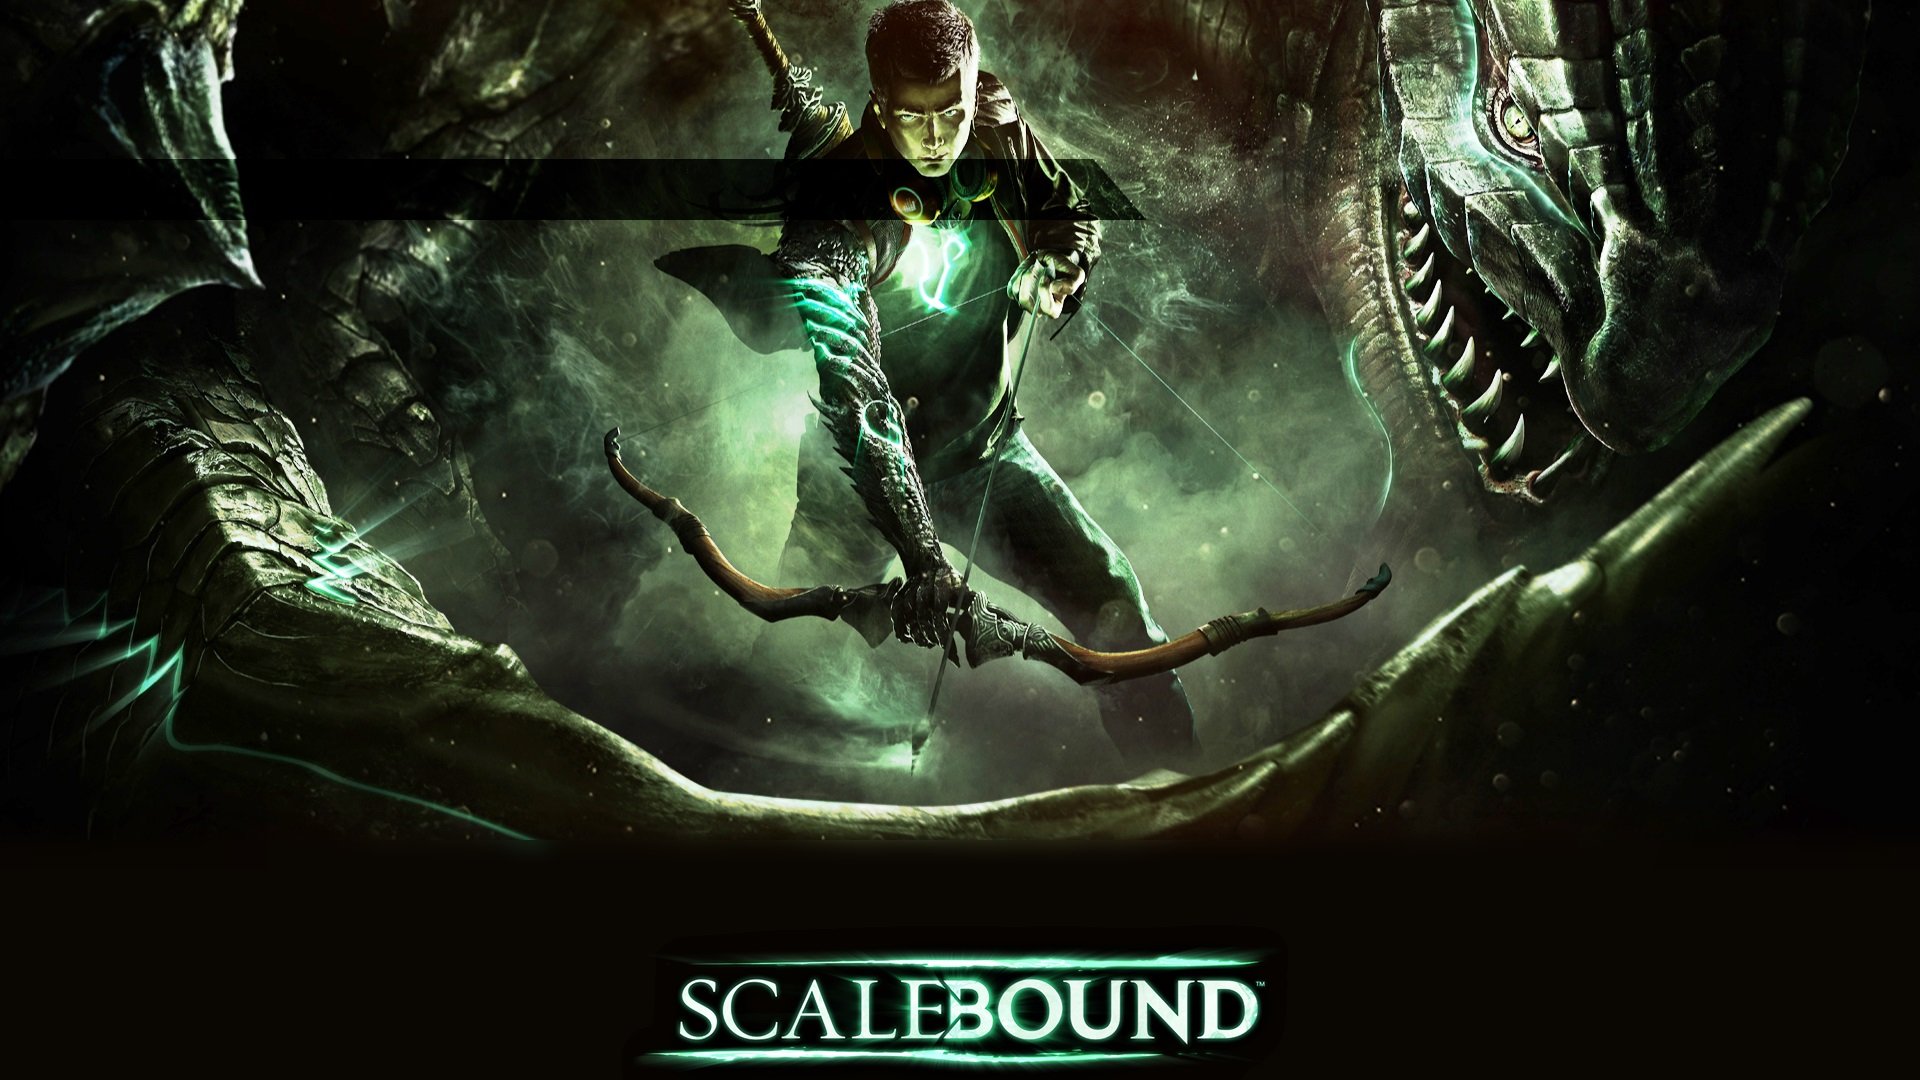 scalebound, Action, Rpg, Fighting, Dinosaur, 1sbound, Fantasy, Dragon, Poster Wallpaper